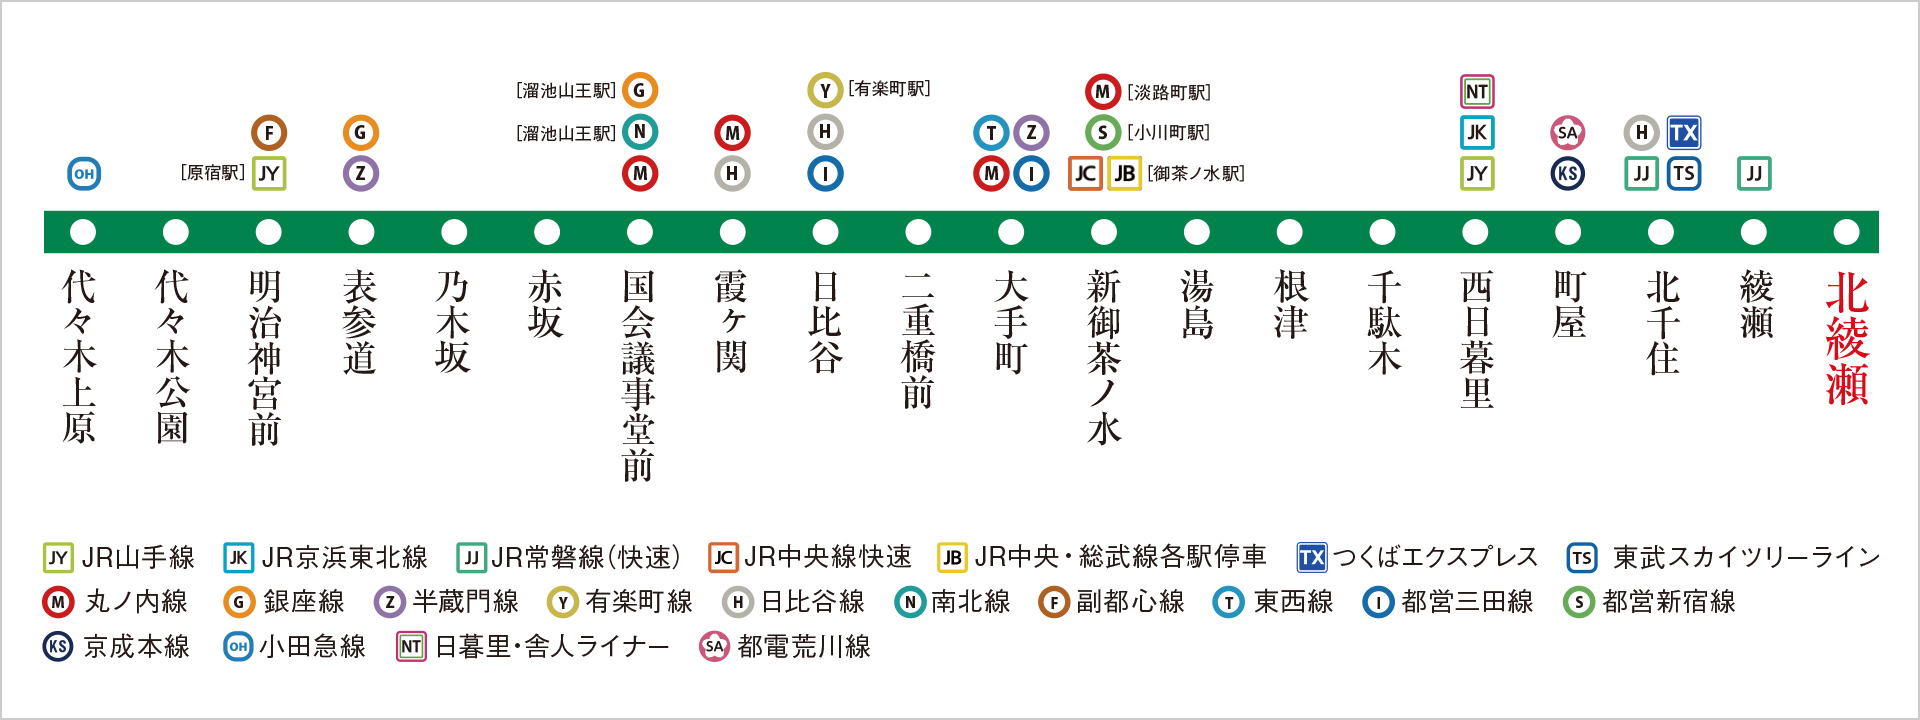 東京メトロ千代田線路線図